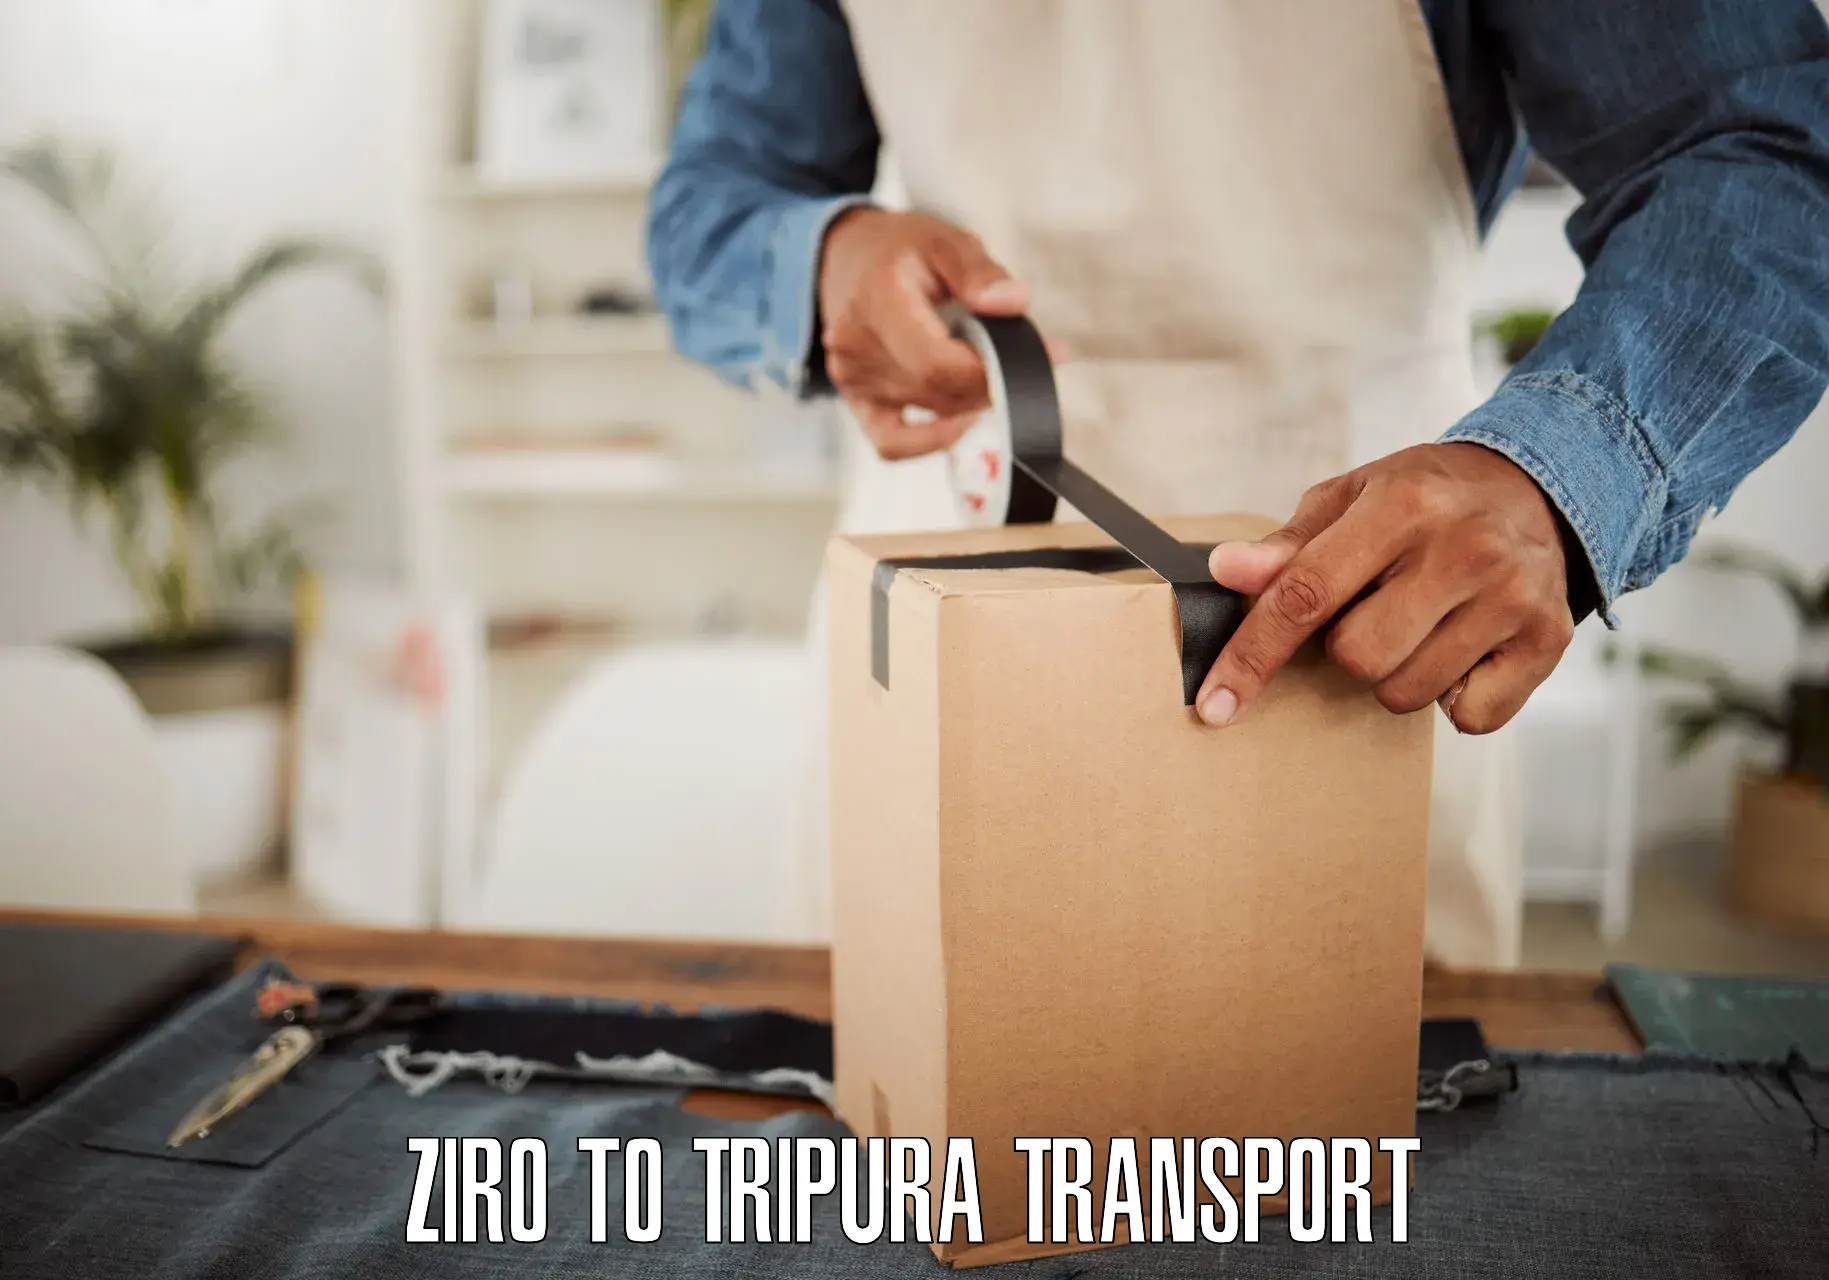 Bike transport service Ziro to North Tripura